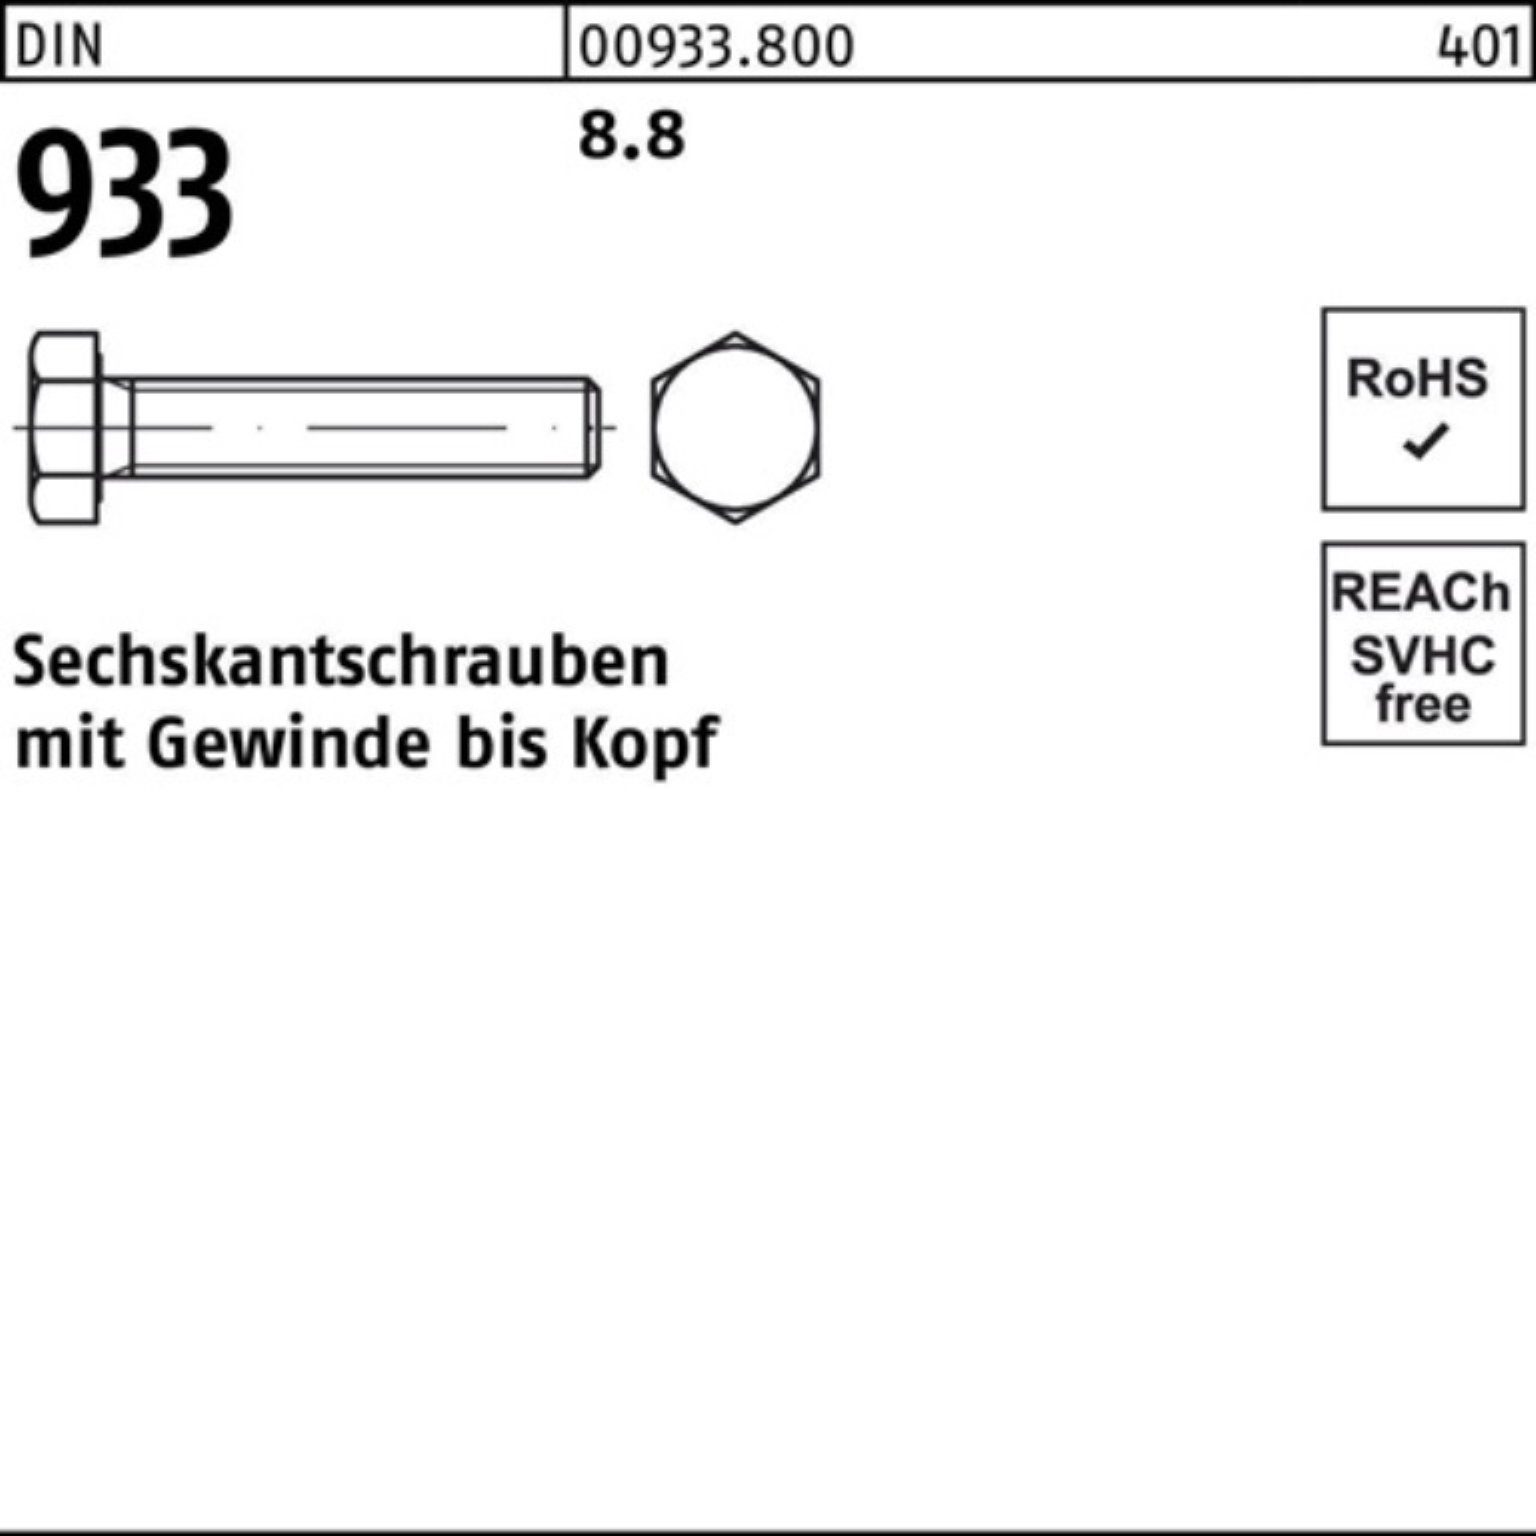 180 100er Reyher VG Pack M10x 933 8.8 933 Sechskantschraube Sechskantschraube DIN Stück 50 DIN